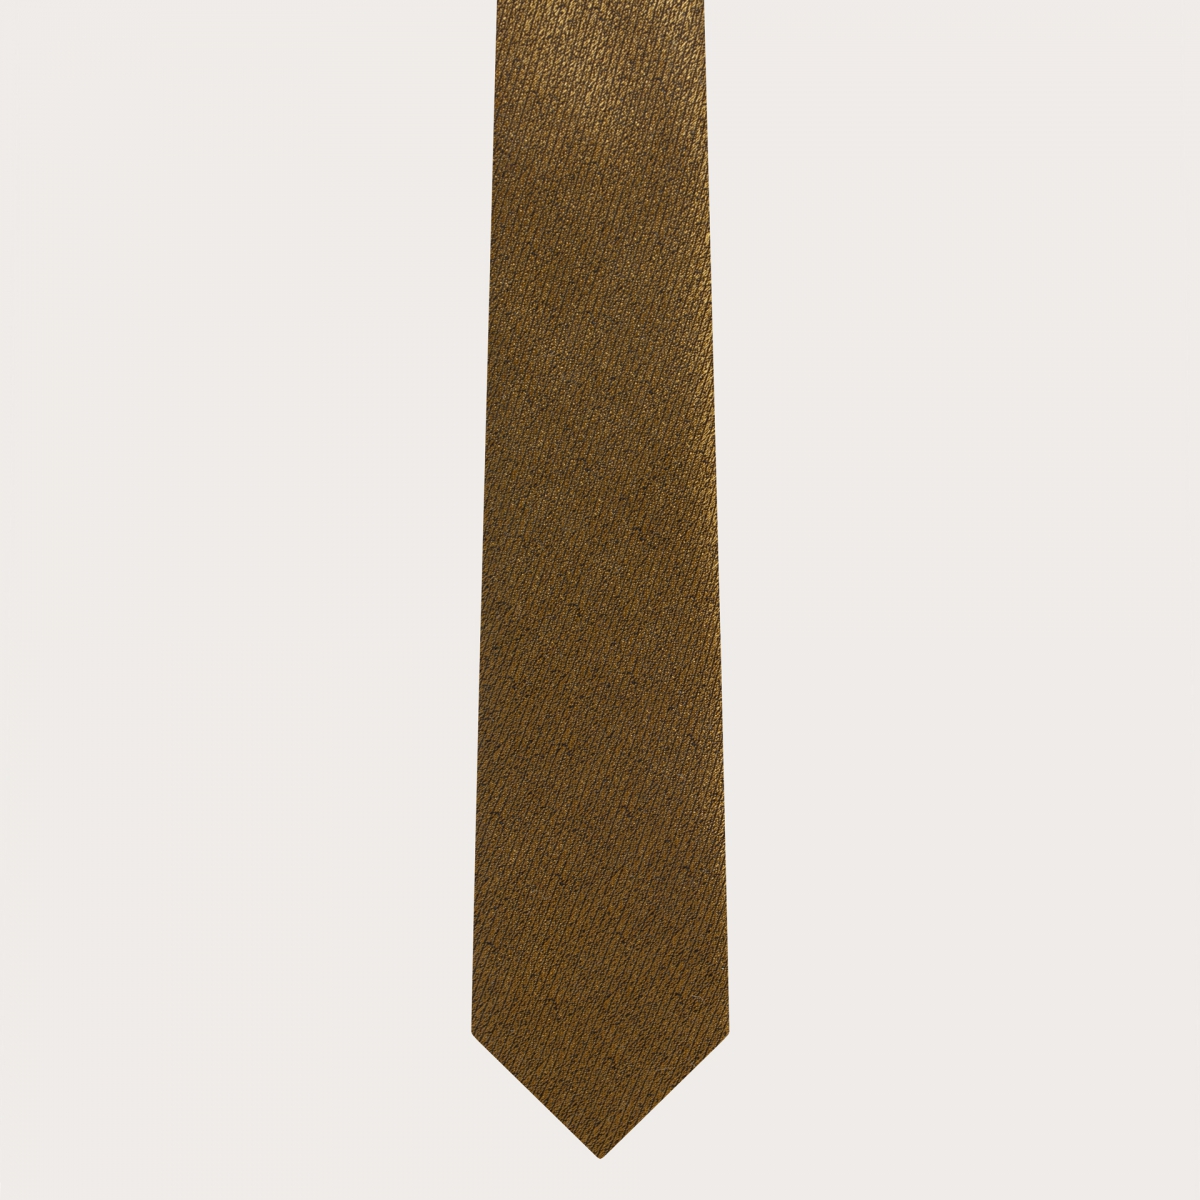 BRUCLE Elegante conjunto de tirantes finos y corbata de seda jacquard dorado irisado